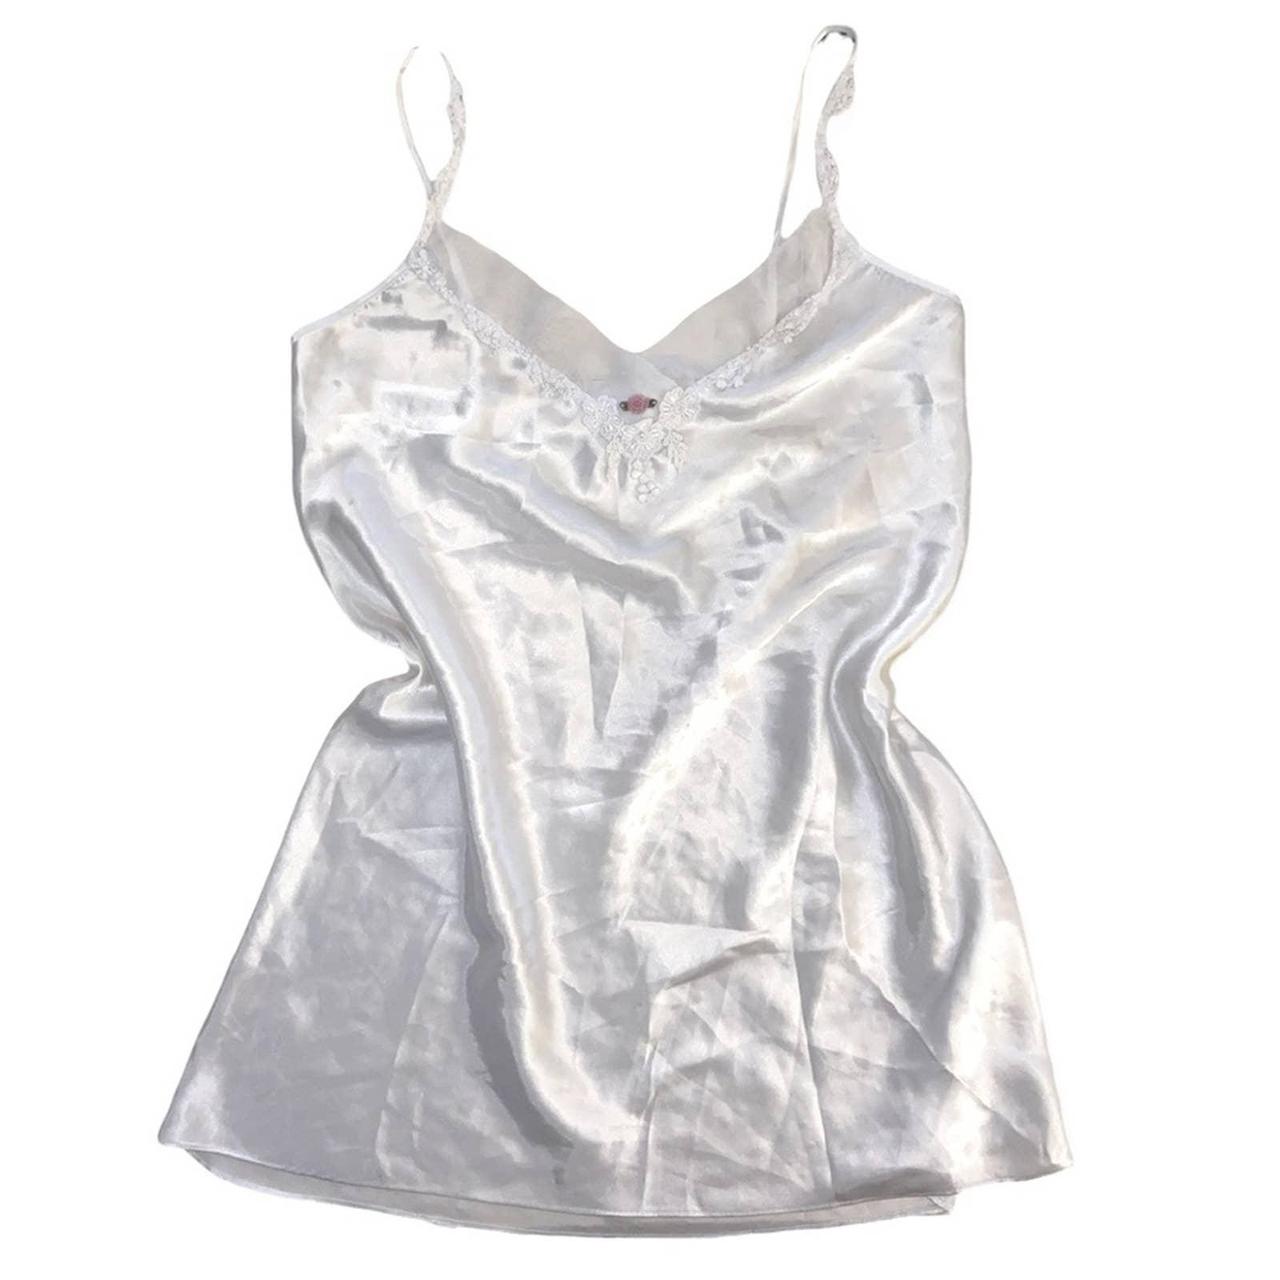 Vintage miss California white lingerie slip dress... - Depop